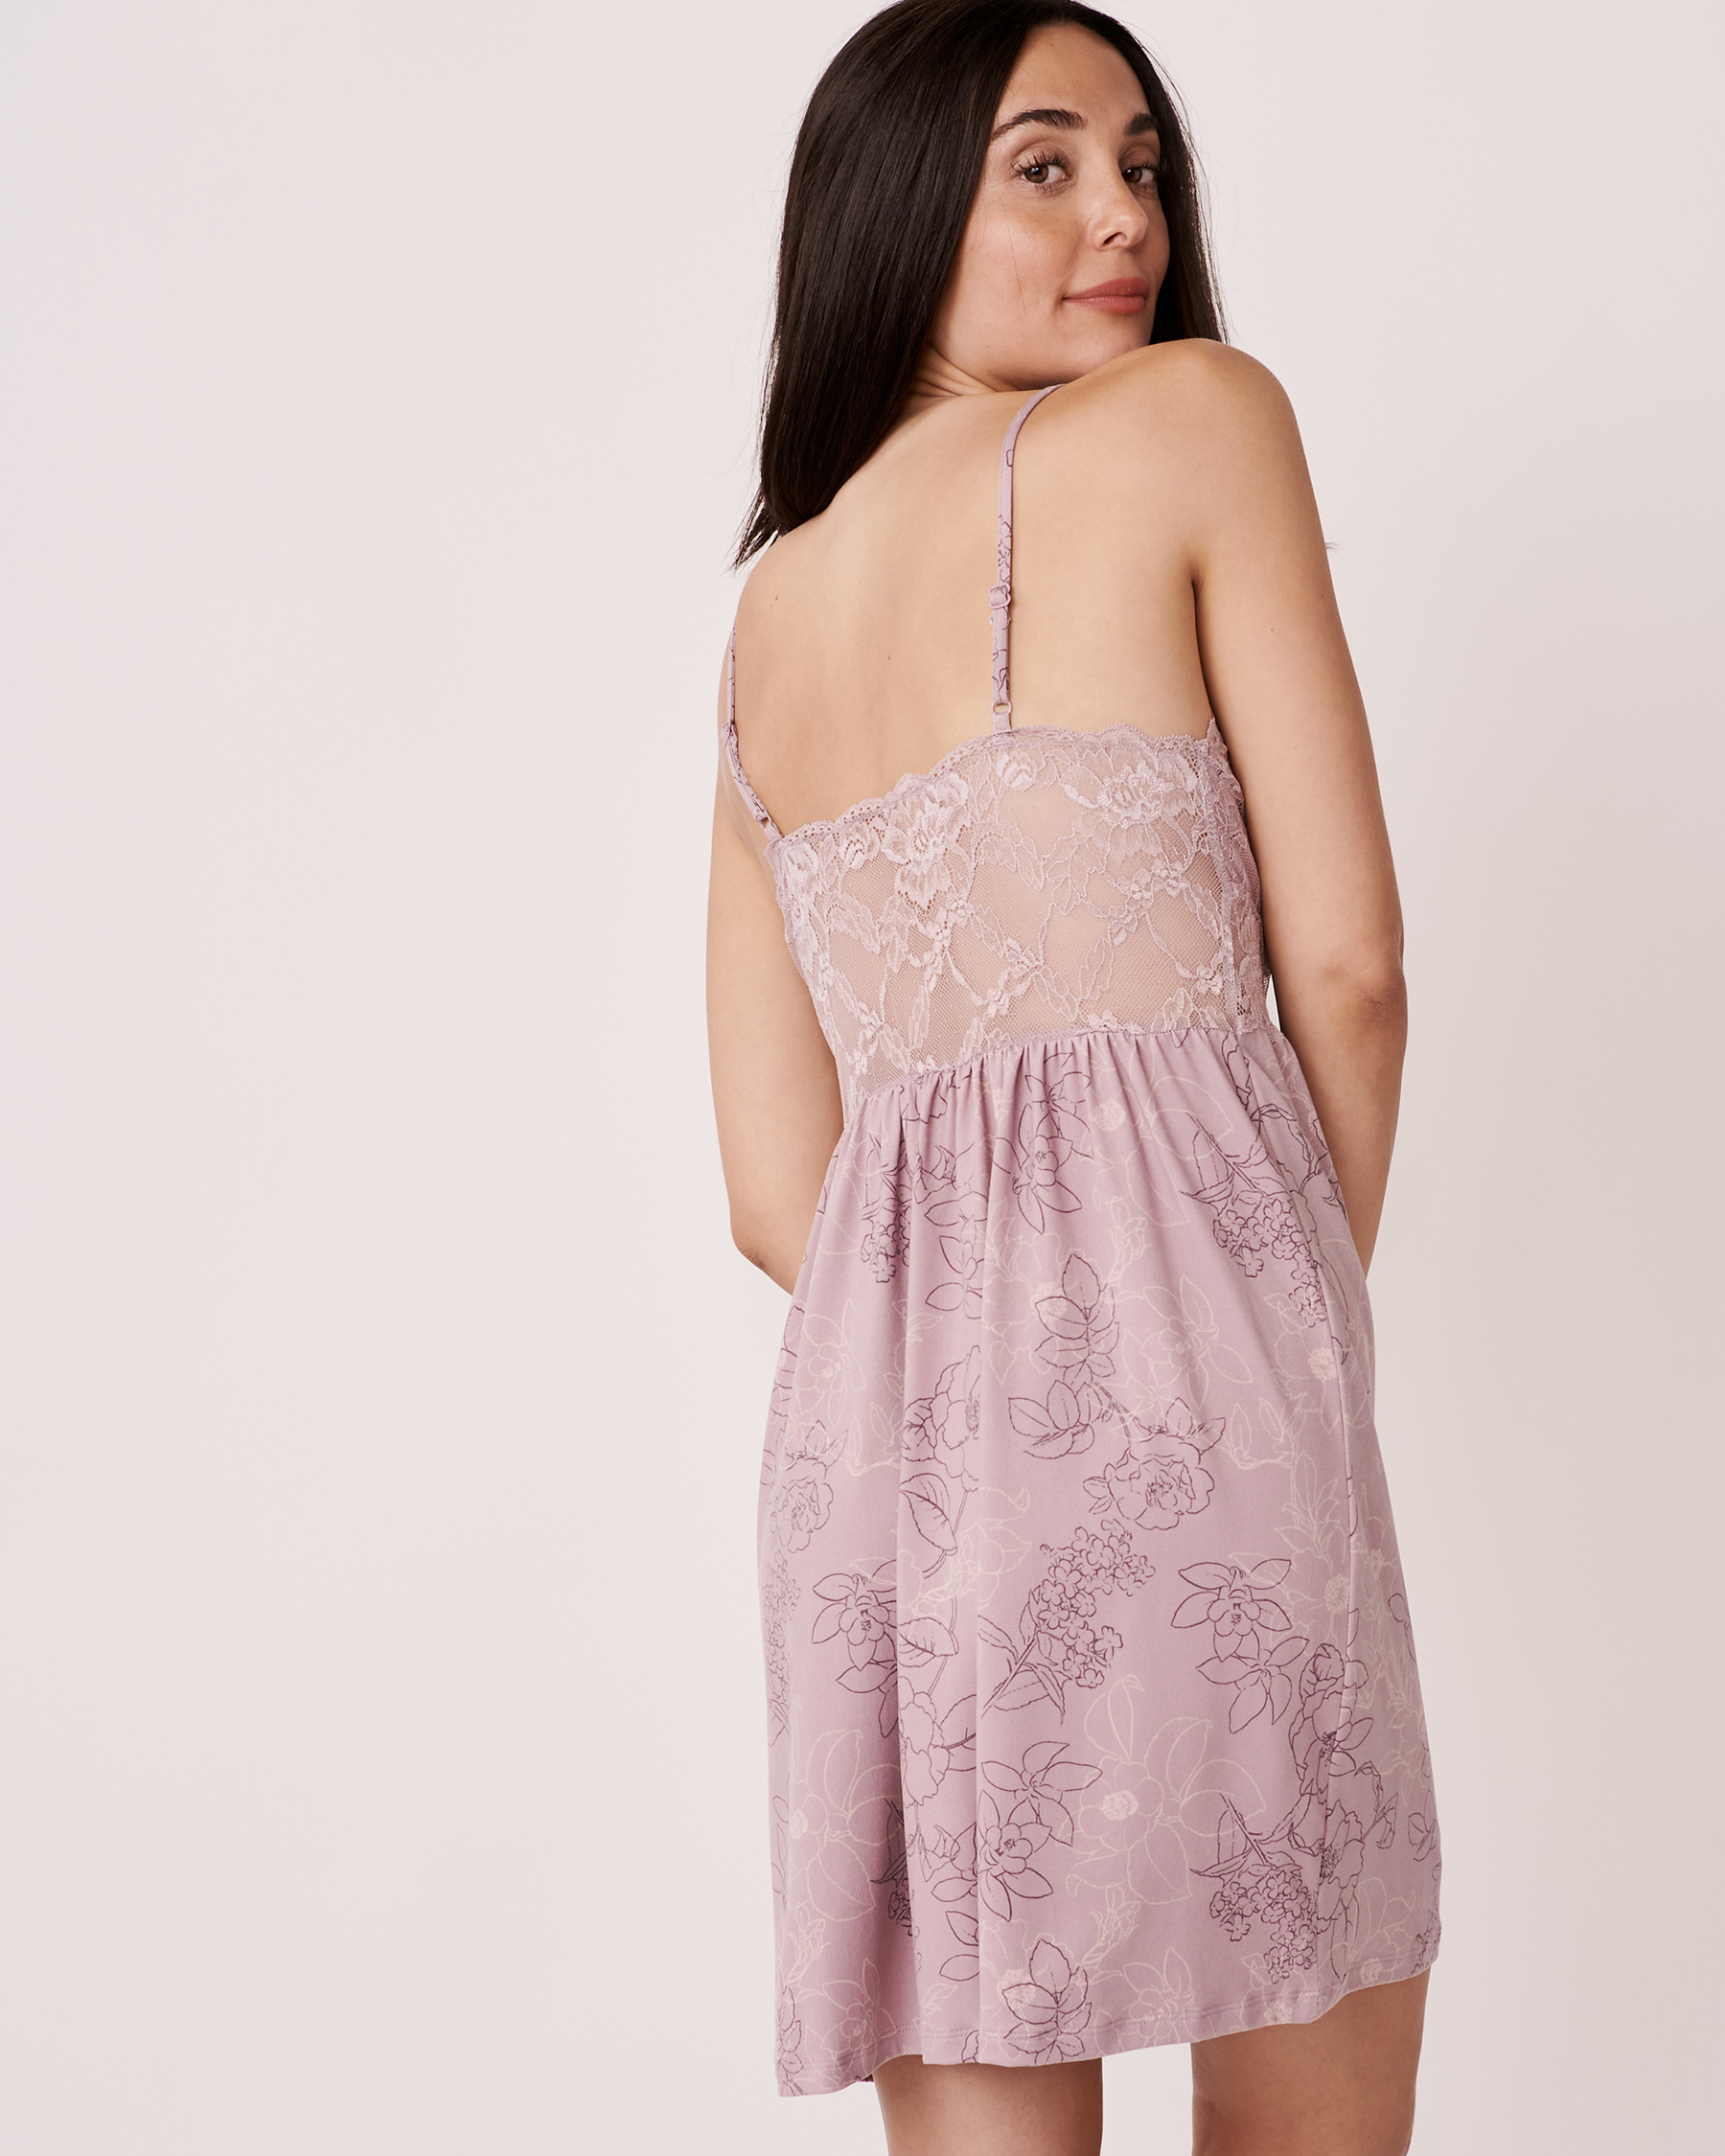 LA VIE EN ROSE Super Soft Lace Trim Nightie Floral outline 40500210 - View2